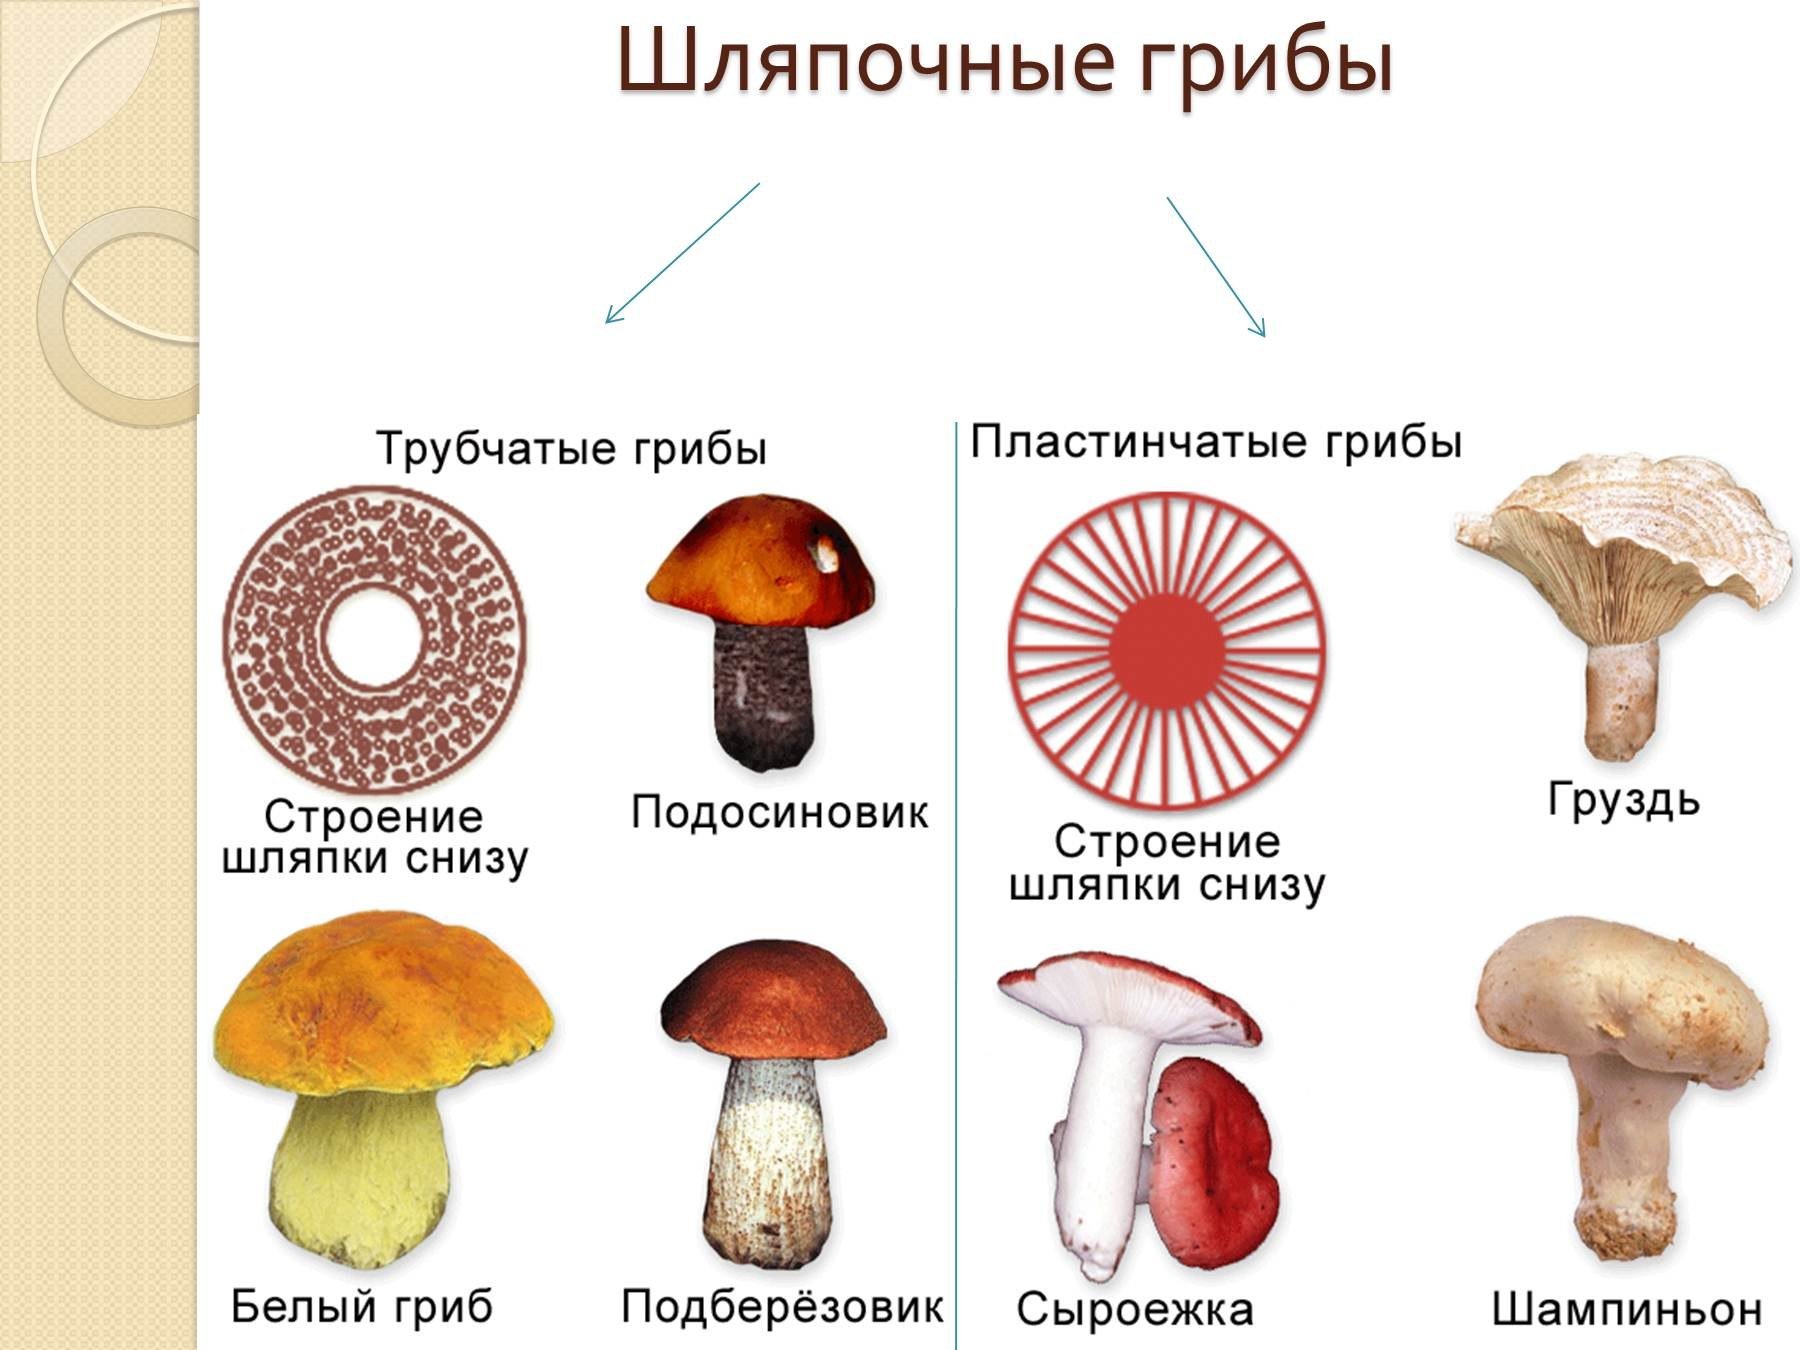 Шляпочные грибы биология 5. Шляпочные грибы трубчатые и пластинчатые грибы. Шляпочные грибы трубчатые и пластинчатые. Представители шляпочных грибов 5 класс. Несъедобные Шляпочные грибы.